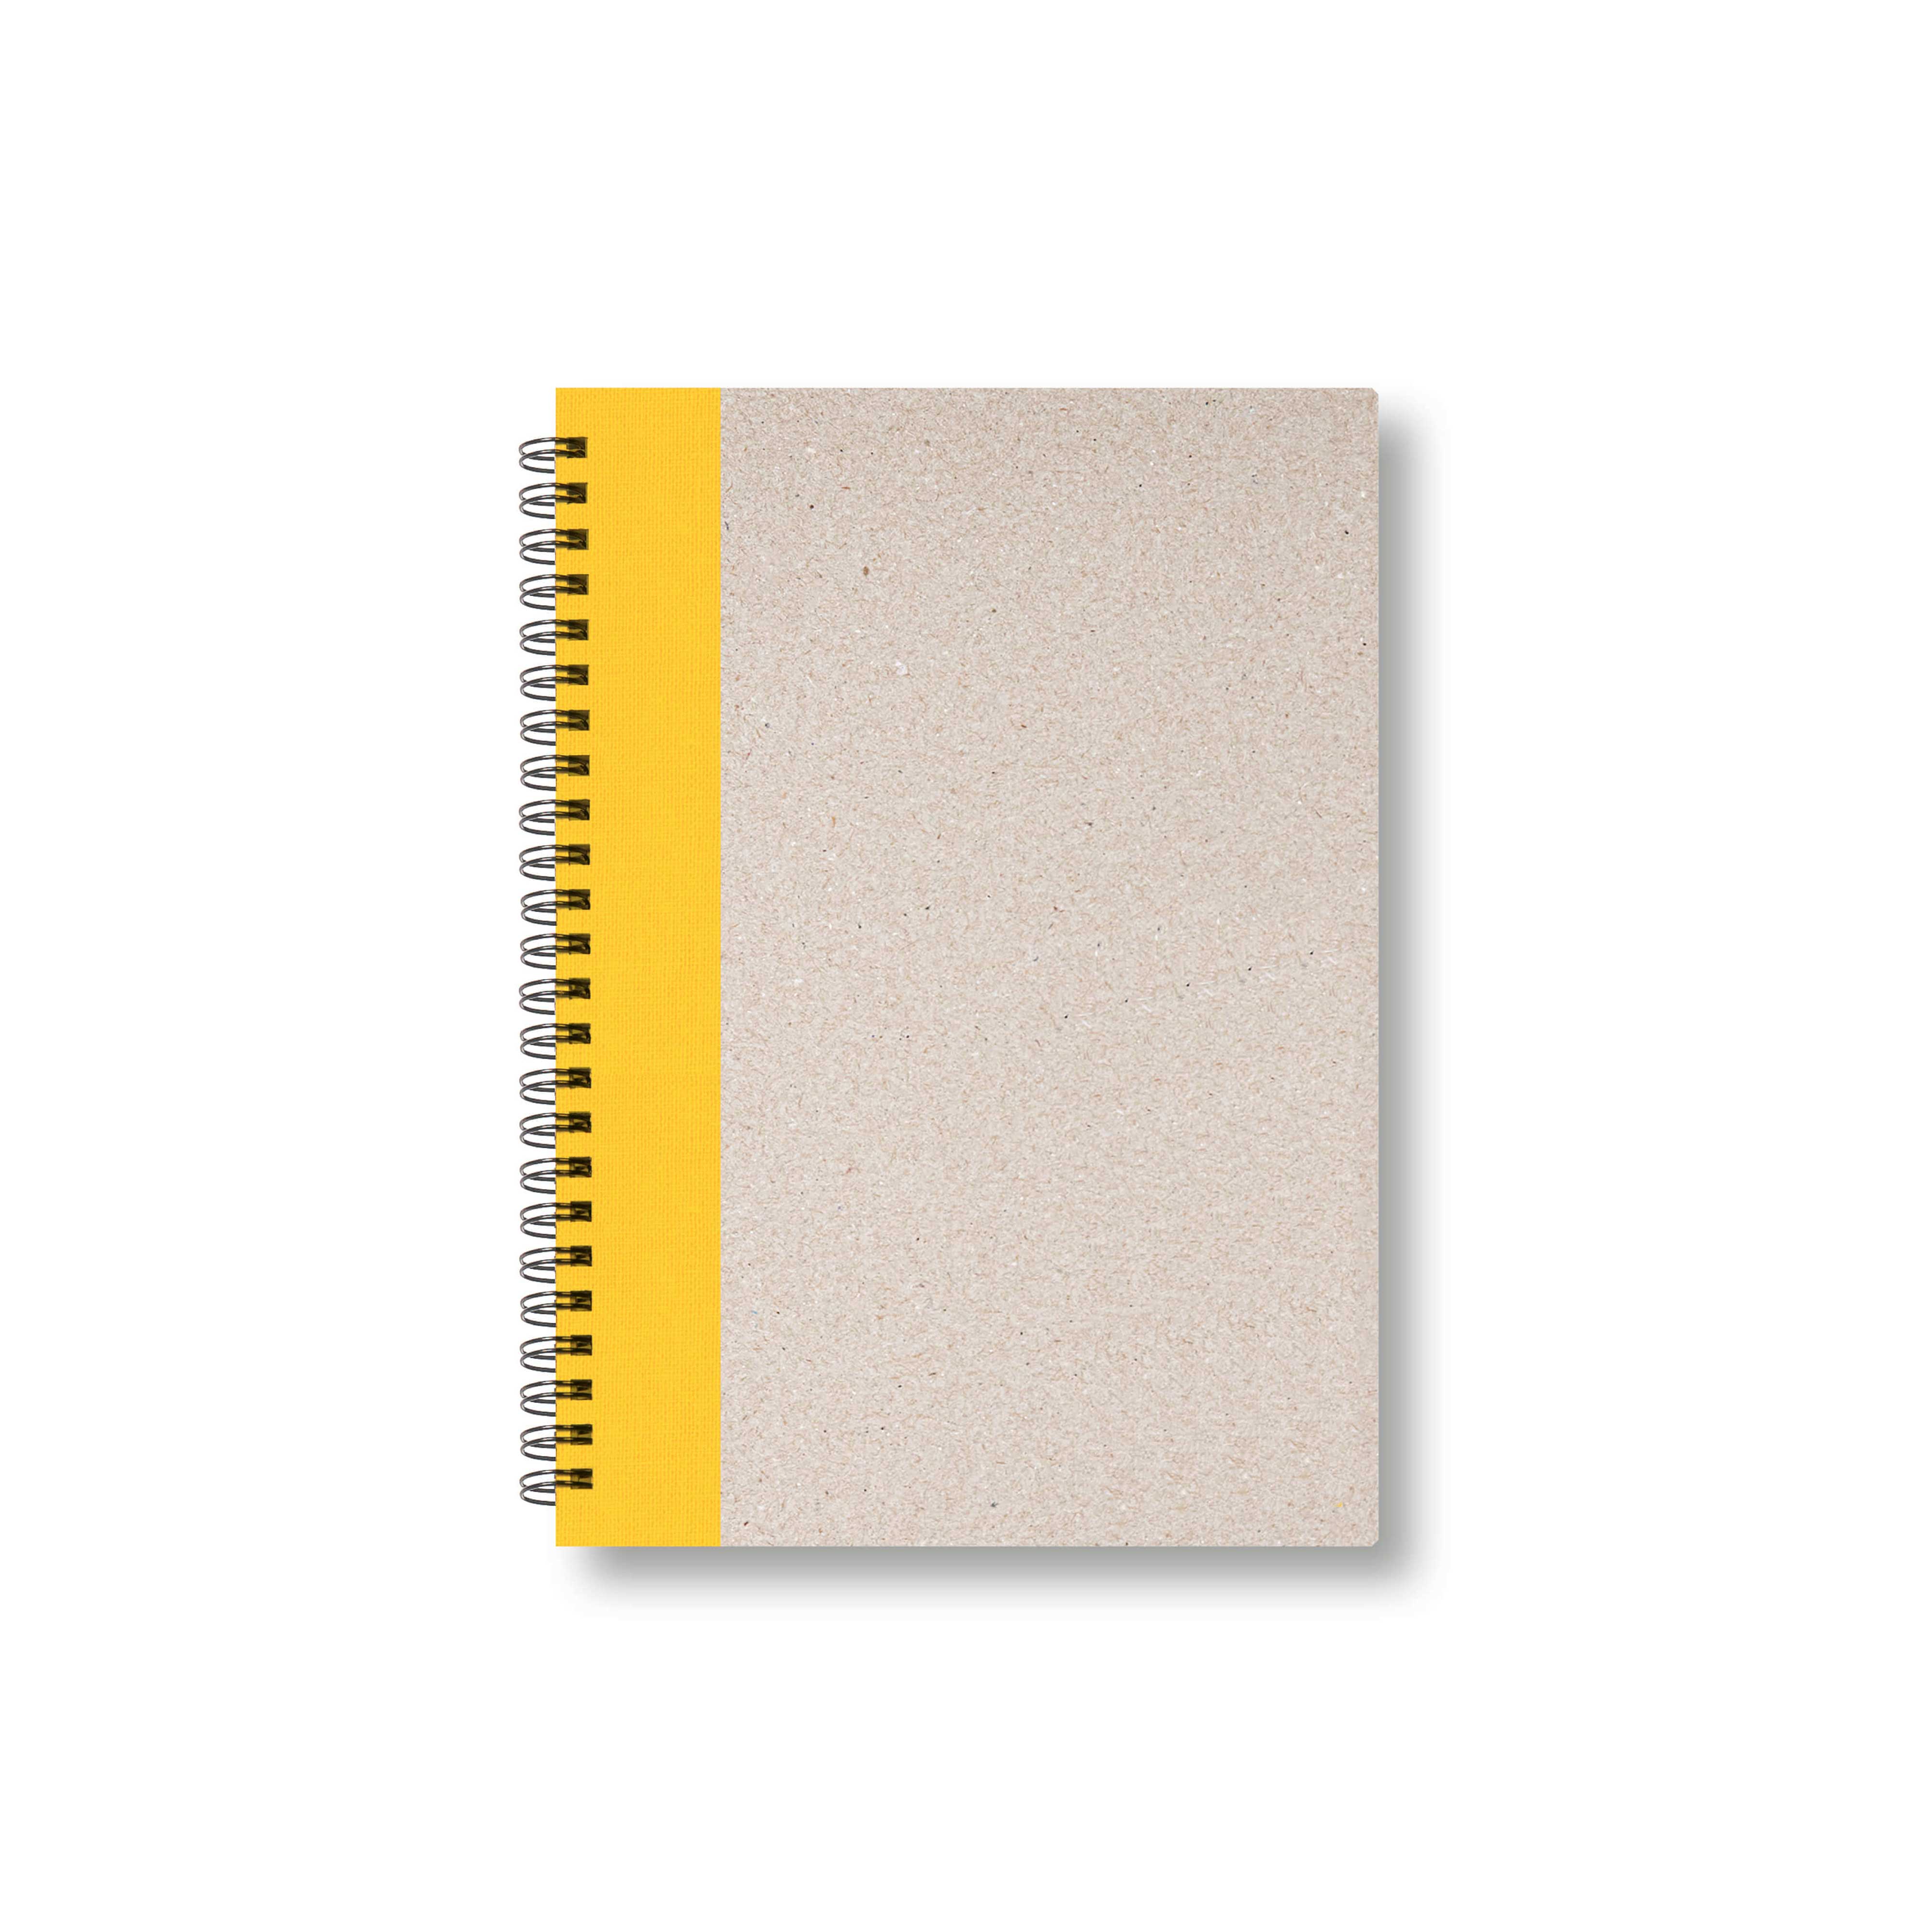 BOBO Zápisník, B6, linkovaný, žlutý, konfiguruj si obálku